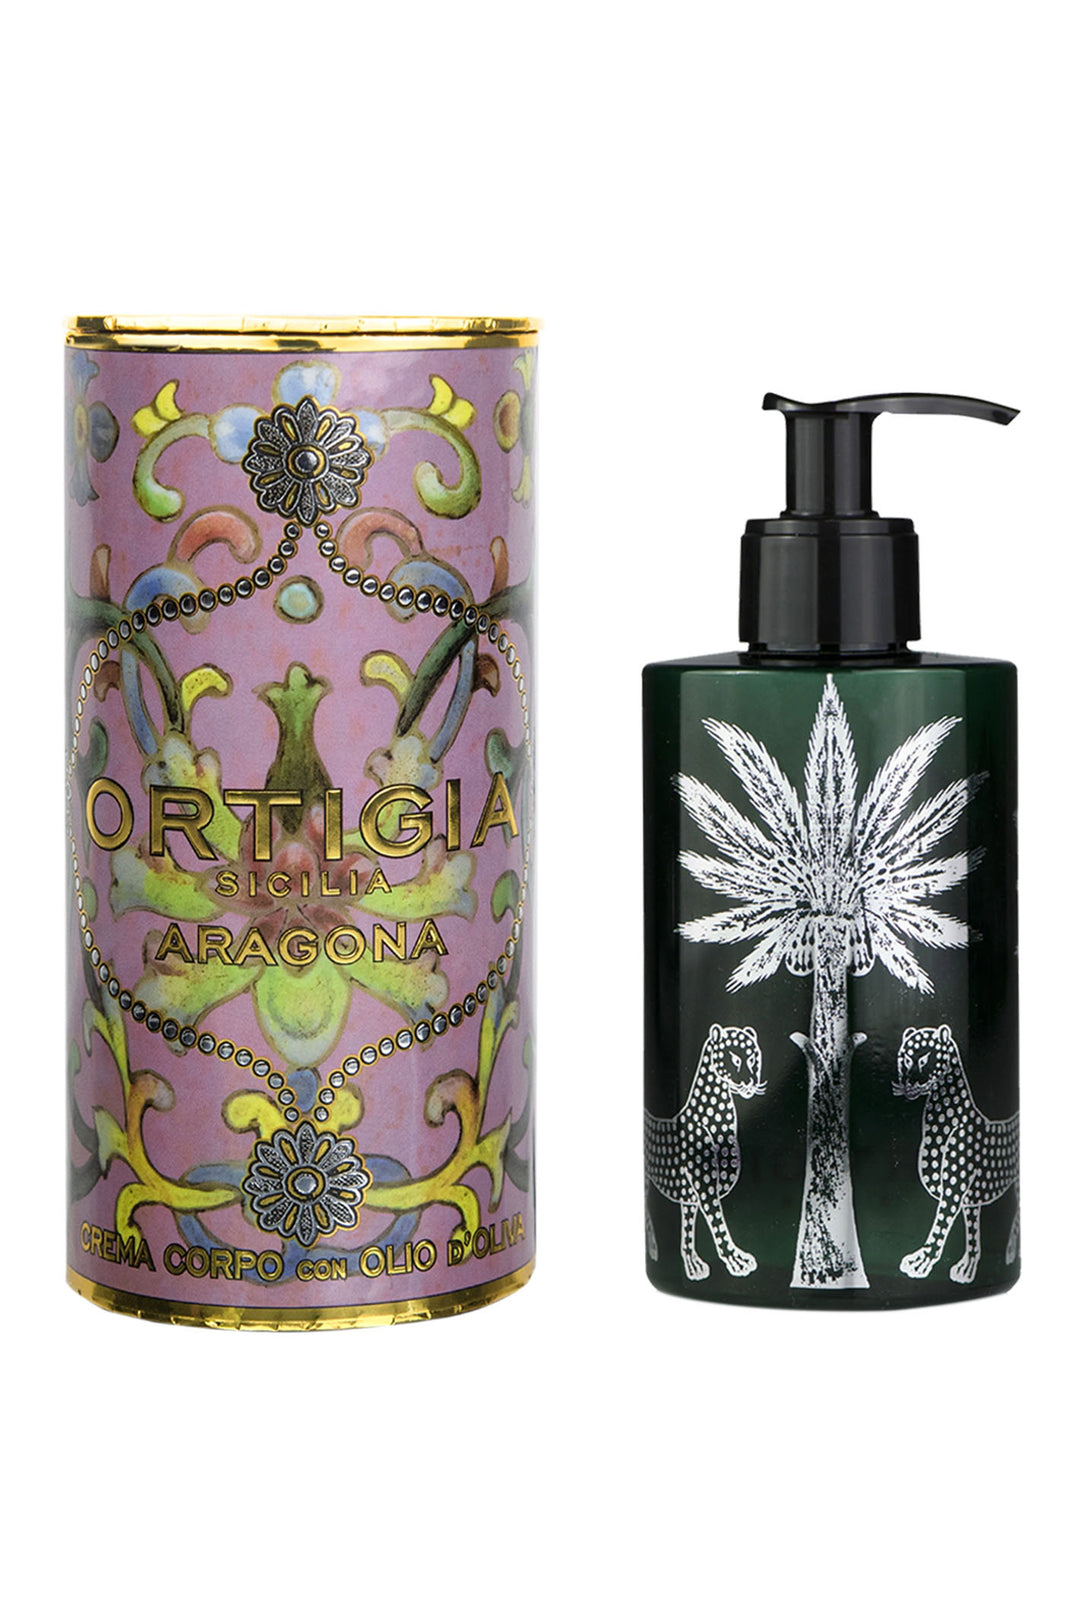 Ortigia Sicilia Aragona Perfume Body Cream 300ml - Olivia Grace Fashion